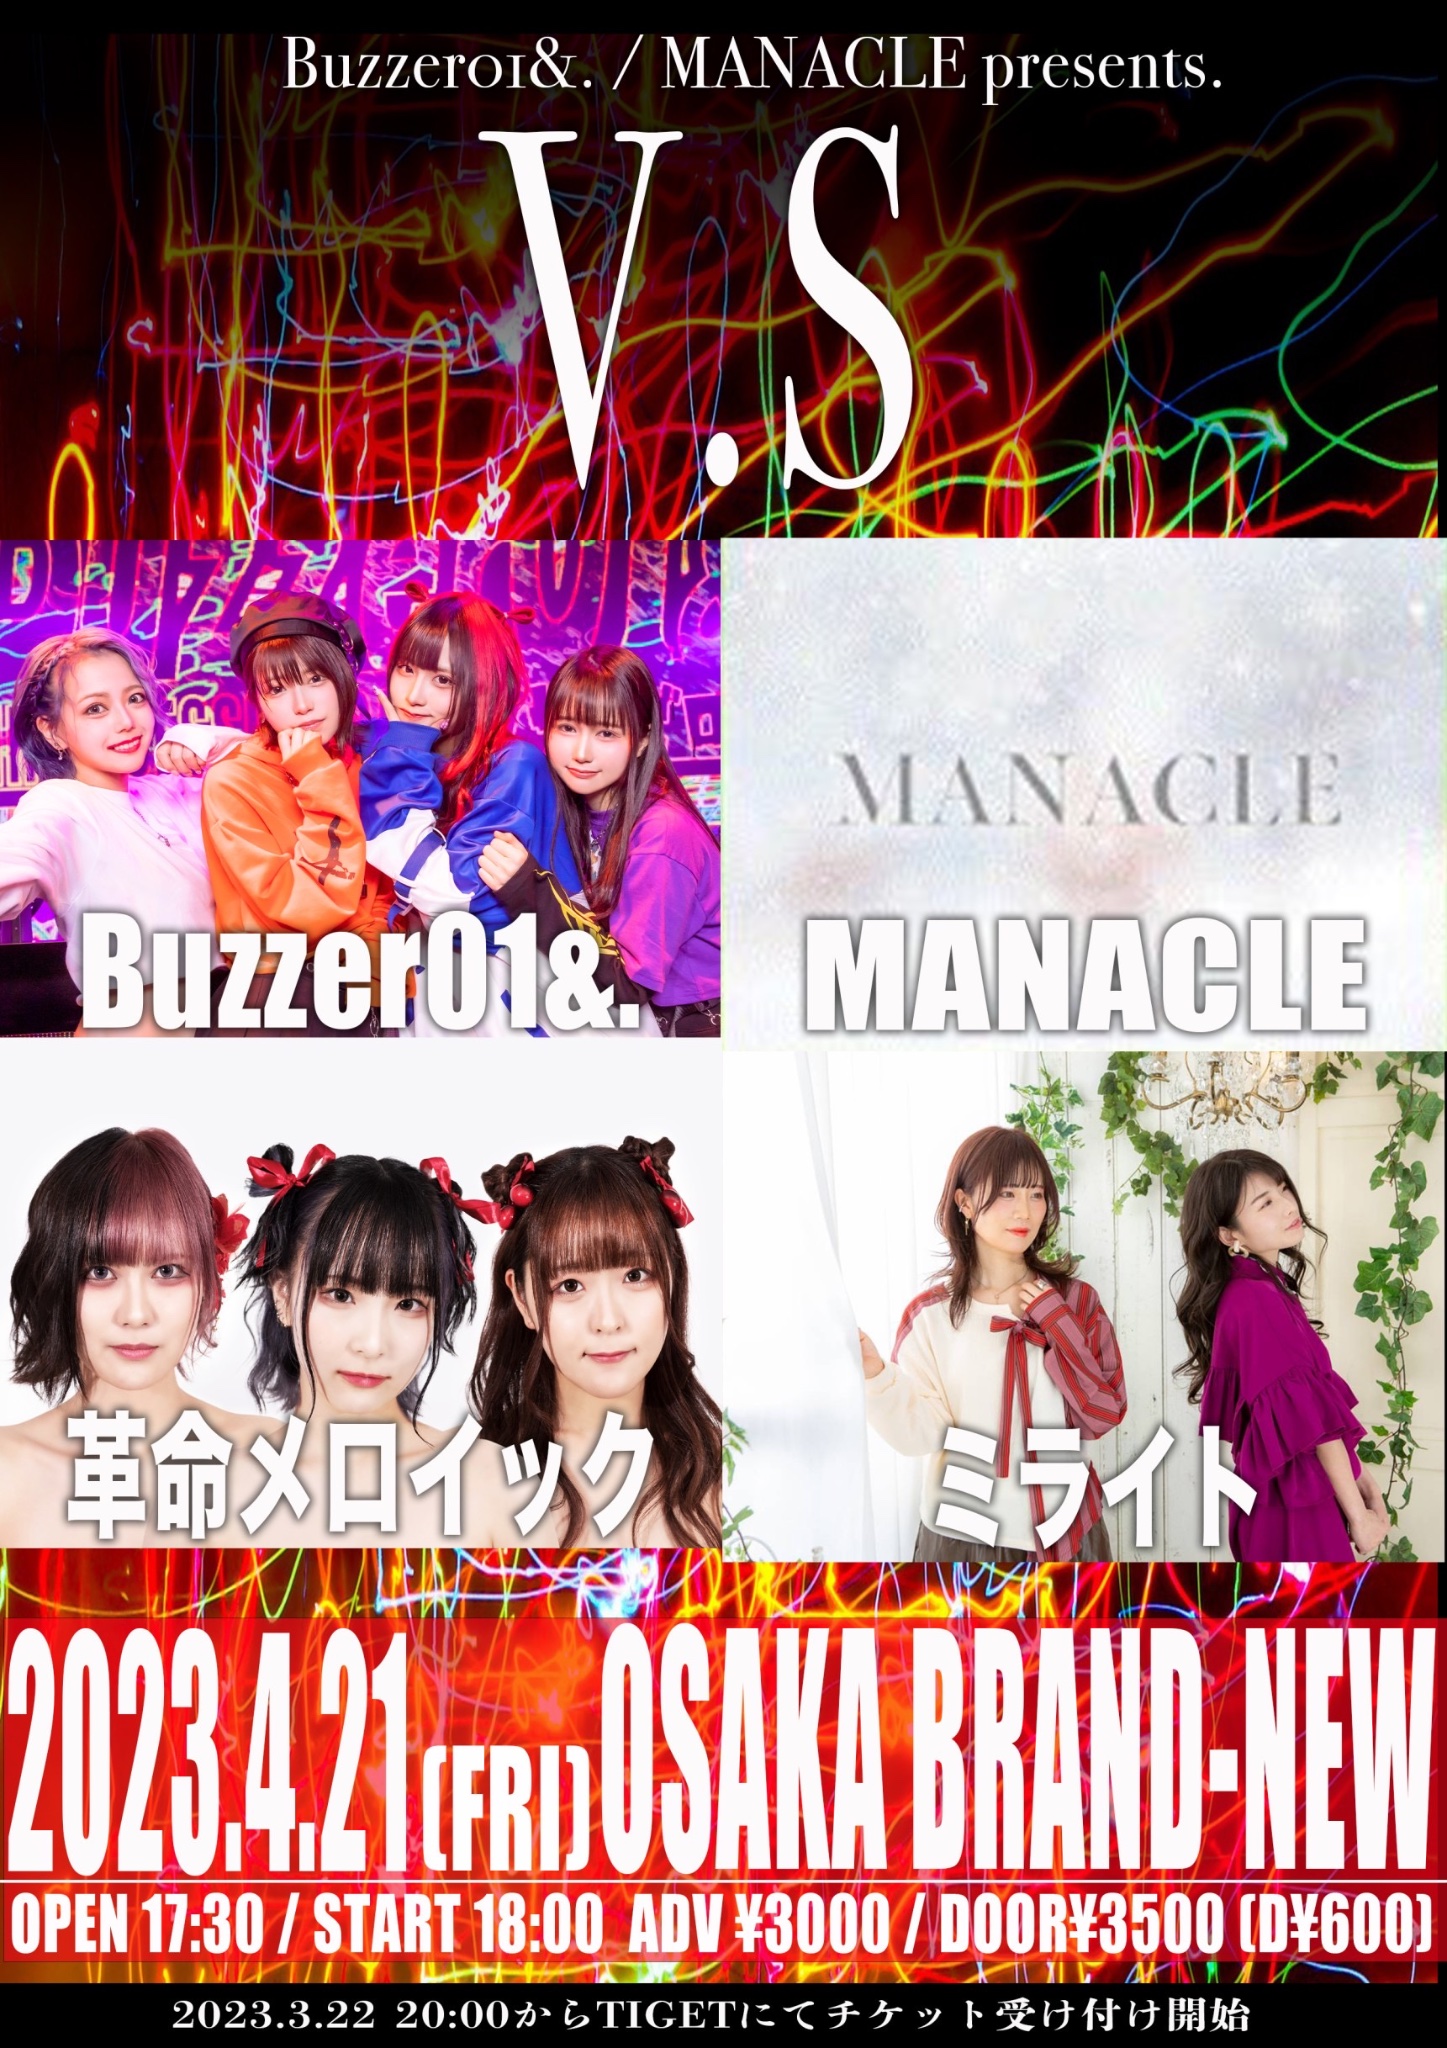 星井あおサポート出演公演(Buzzer01&.)『Buzzer01&. / MANACLE presents. 【V.S】』